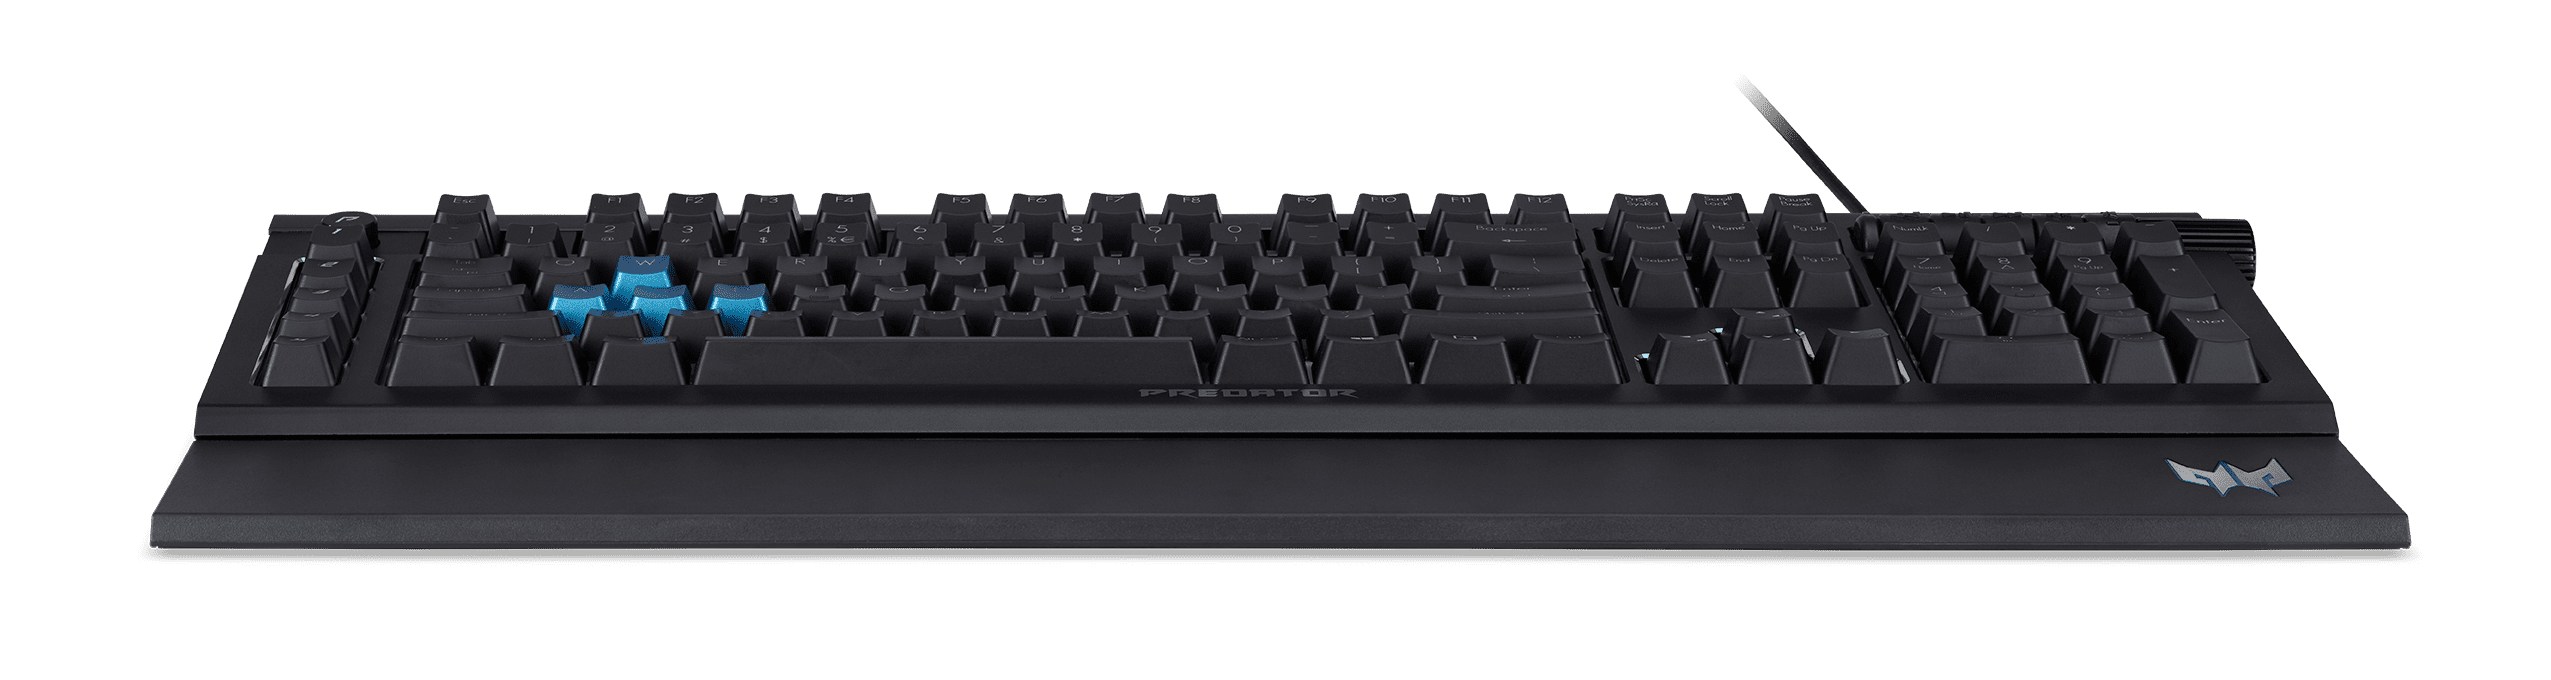  Acer  Predator Aethon 100 Gaming  Keyboard  Black Walmart 